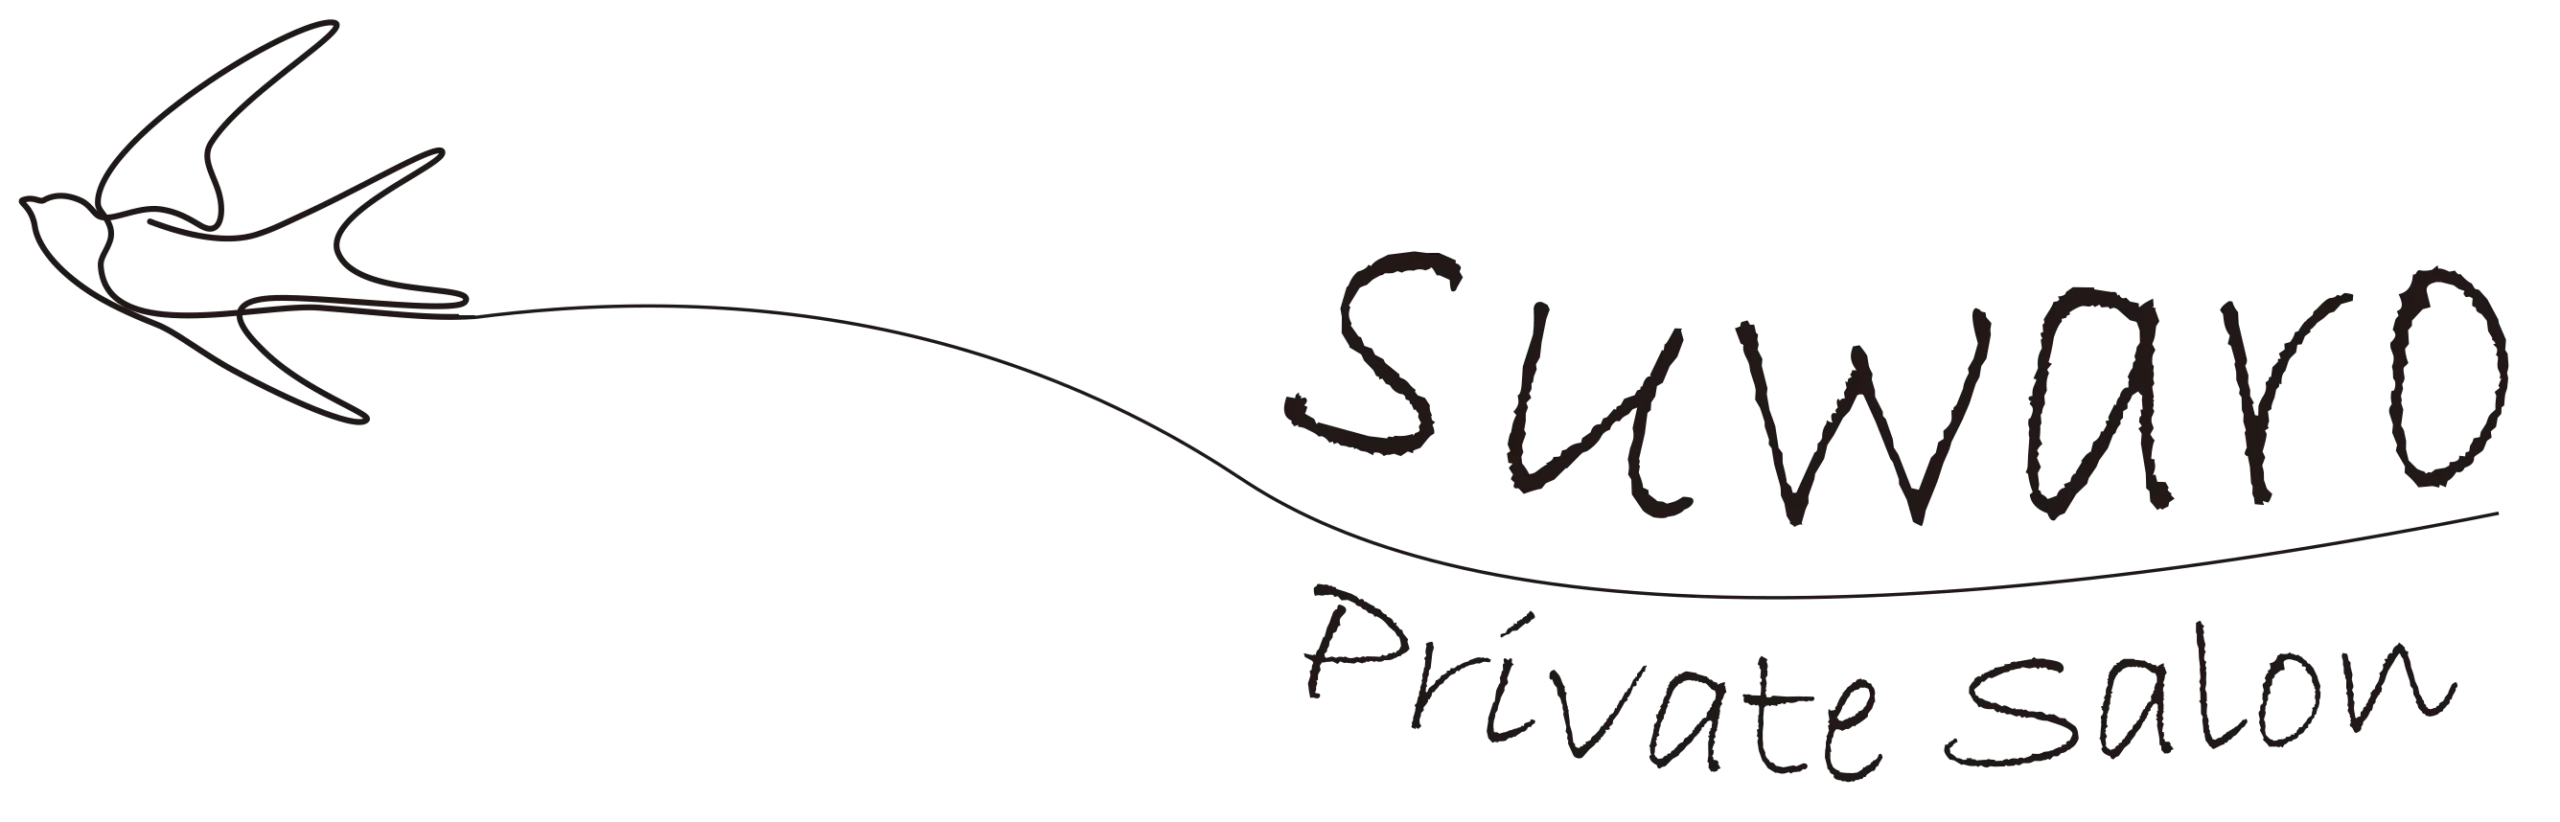 PrivateSalon suwaro